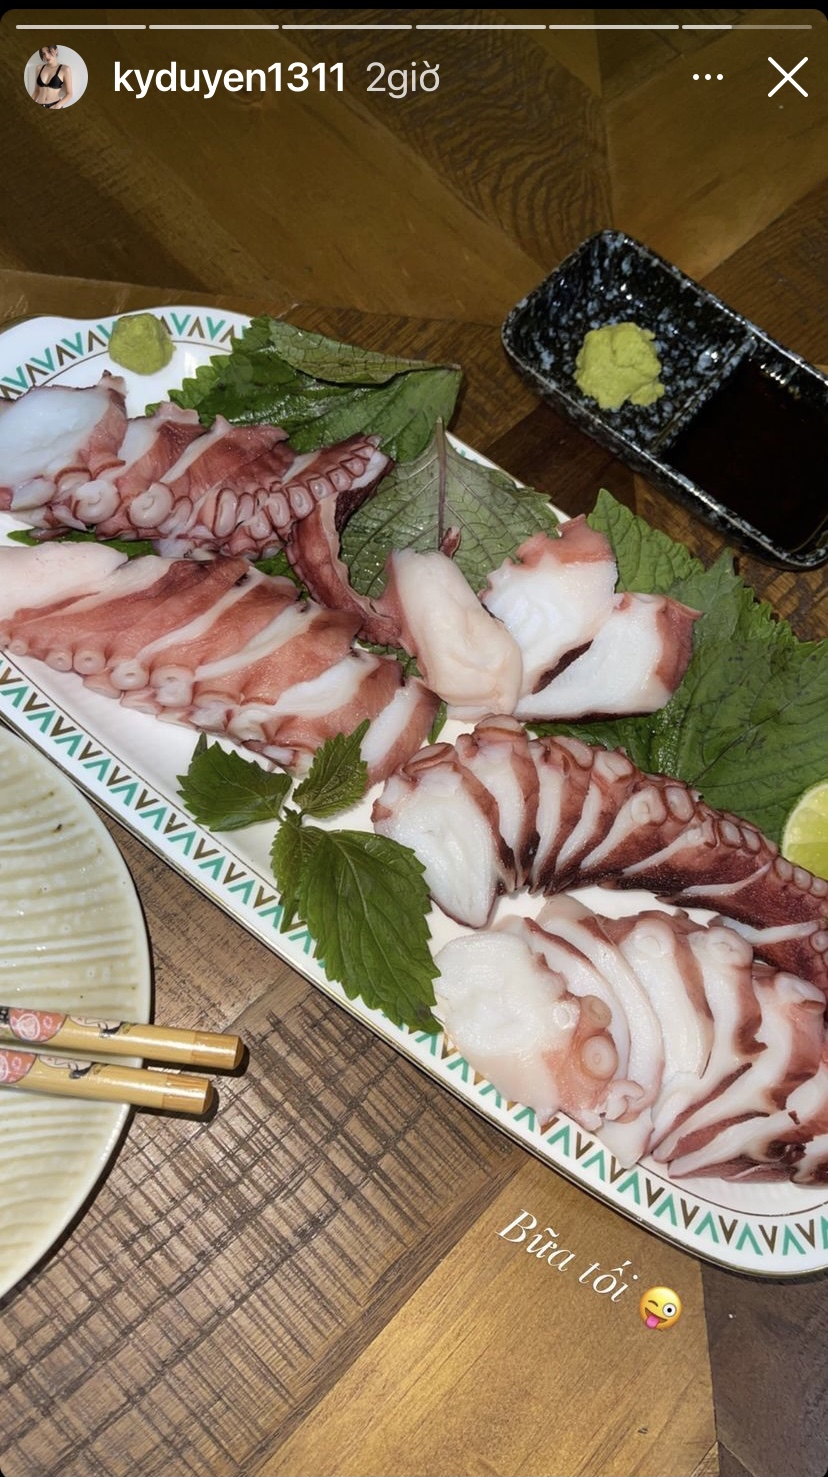 Hoa hậu Kỳ Duyên hôm nay thưởng thức một bữa tối khá thịnh soạn với hải sản tươi sống.